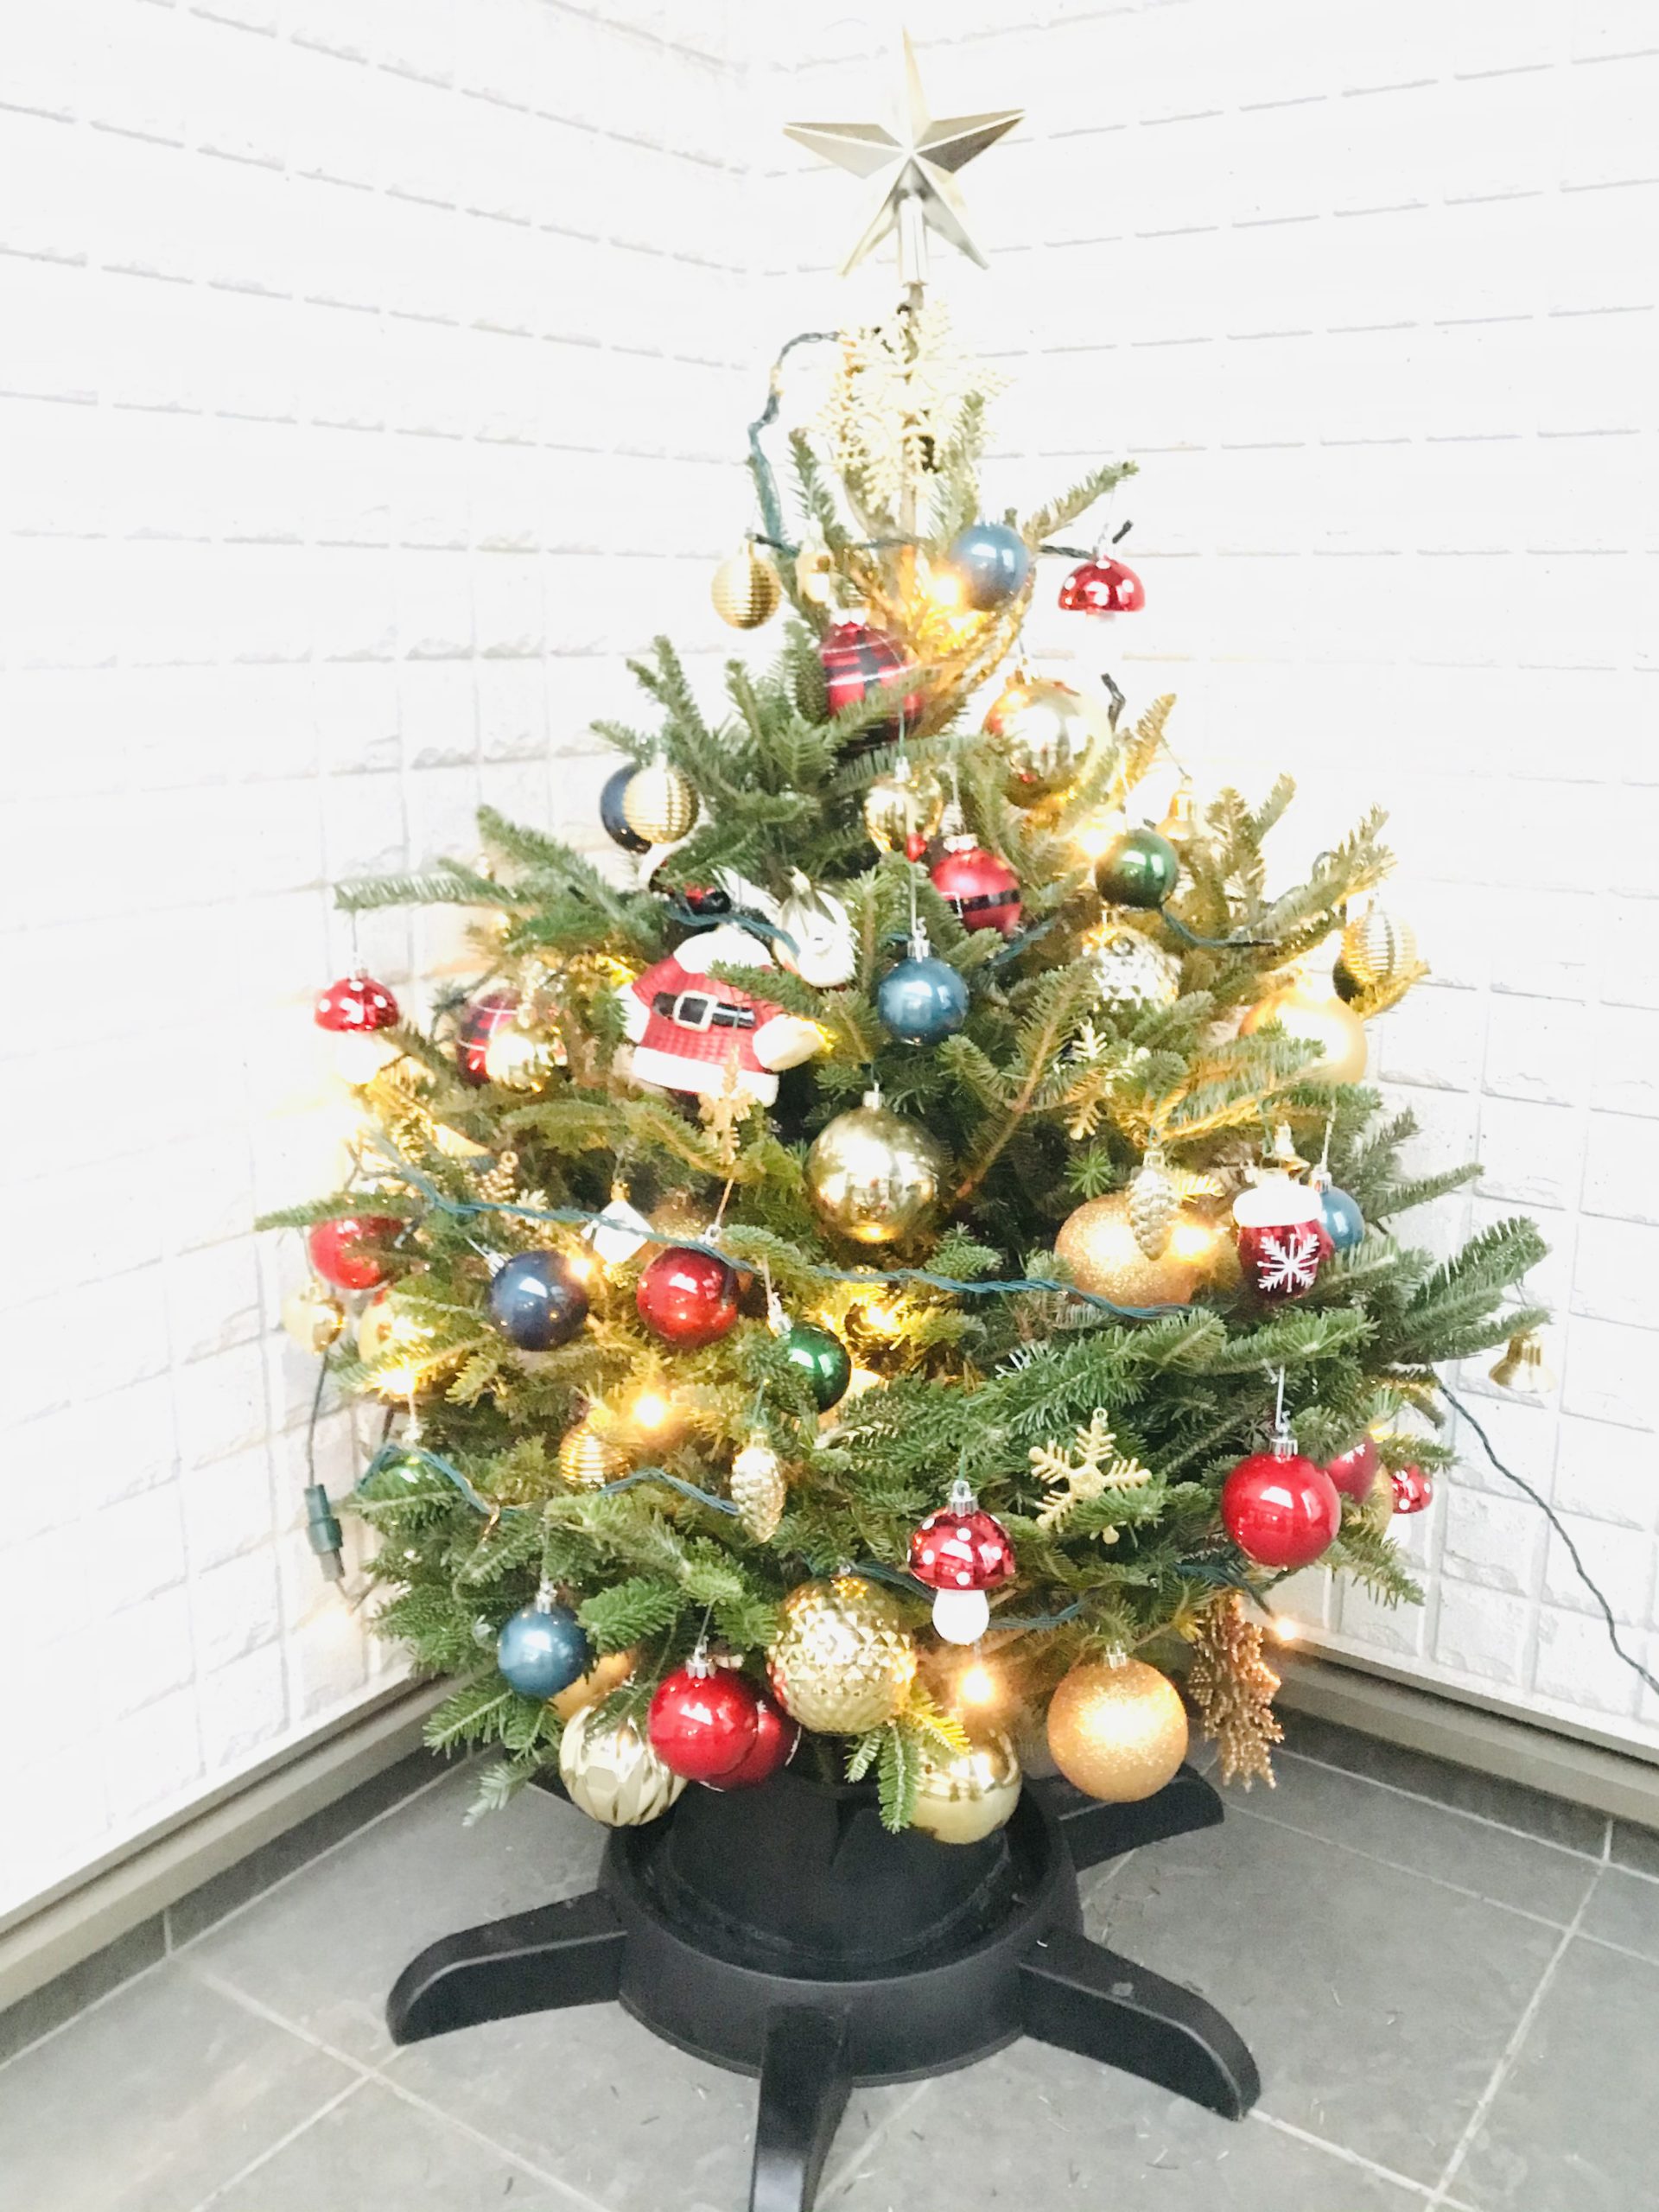 21年版ikea本物のモミの木でクリスマスツリー 飾り方完全ガイド 10年ログ